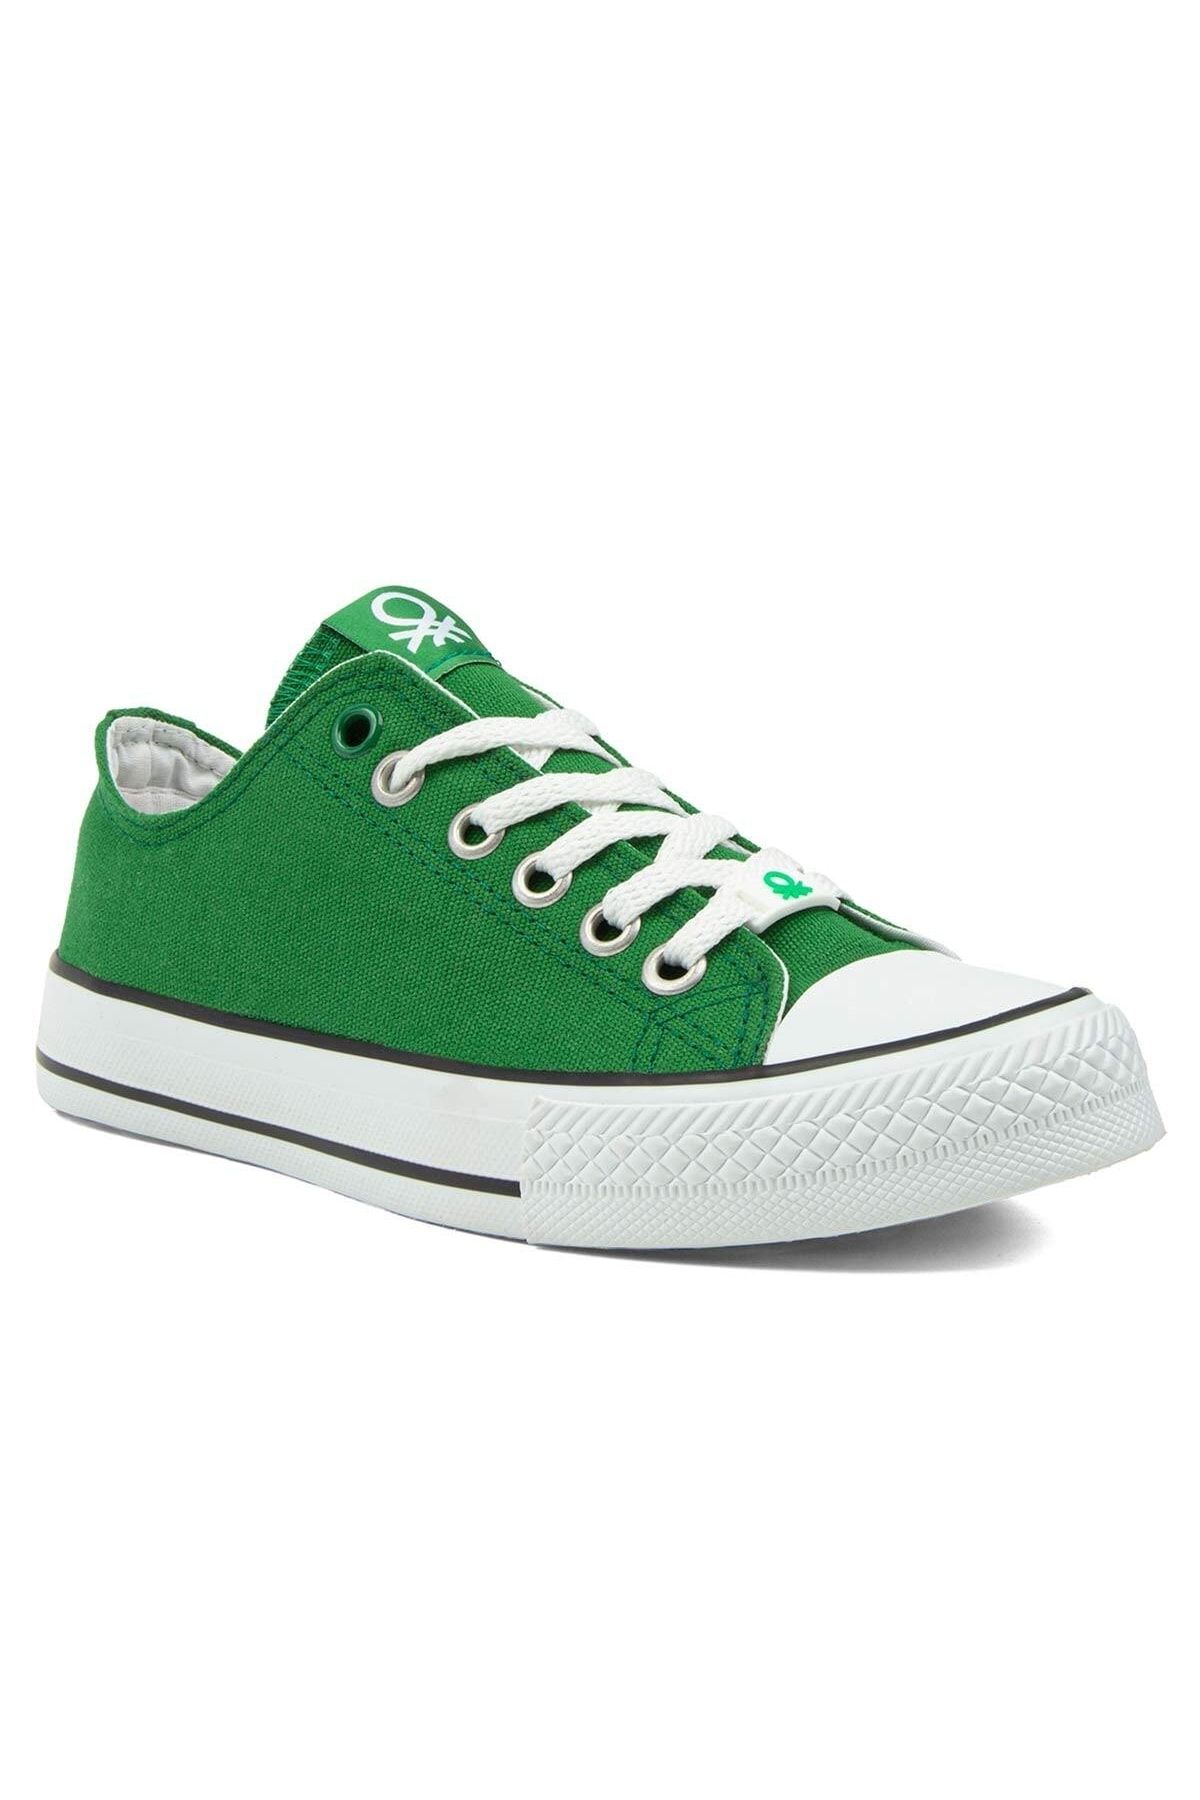 Benetton Erkek Çocuk Spor Ayakkabı Yeşil